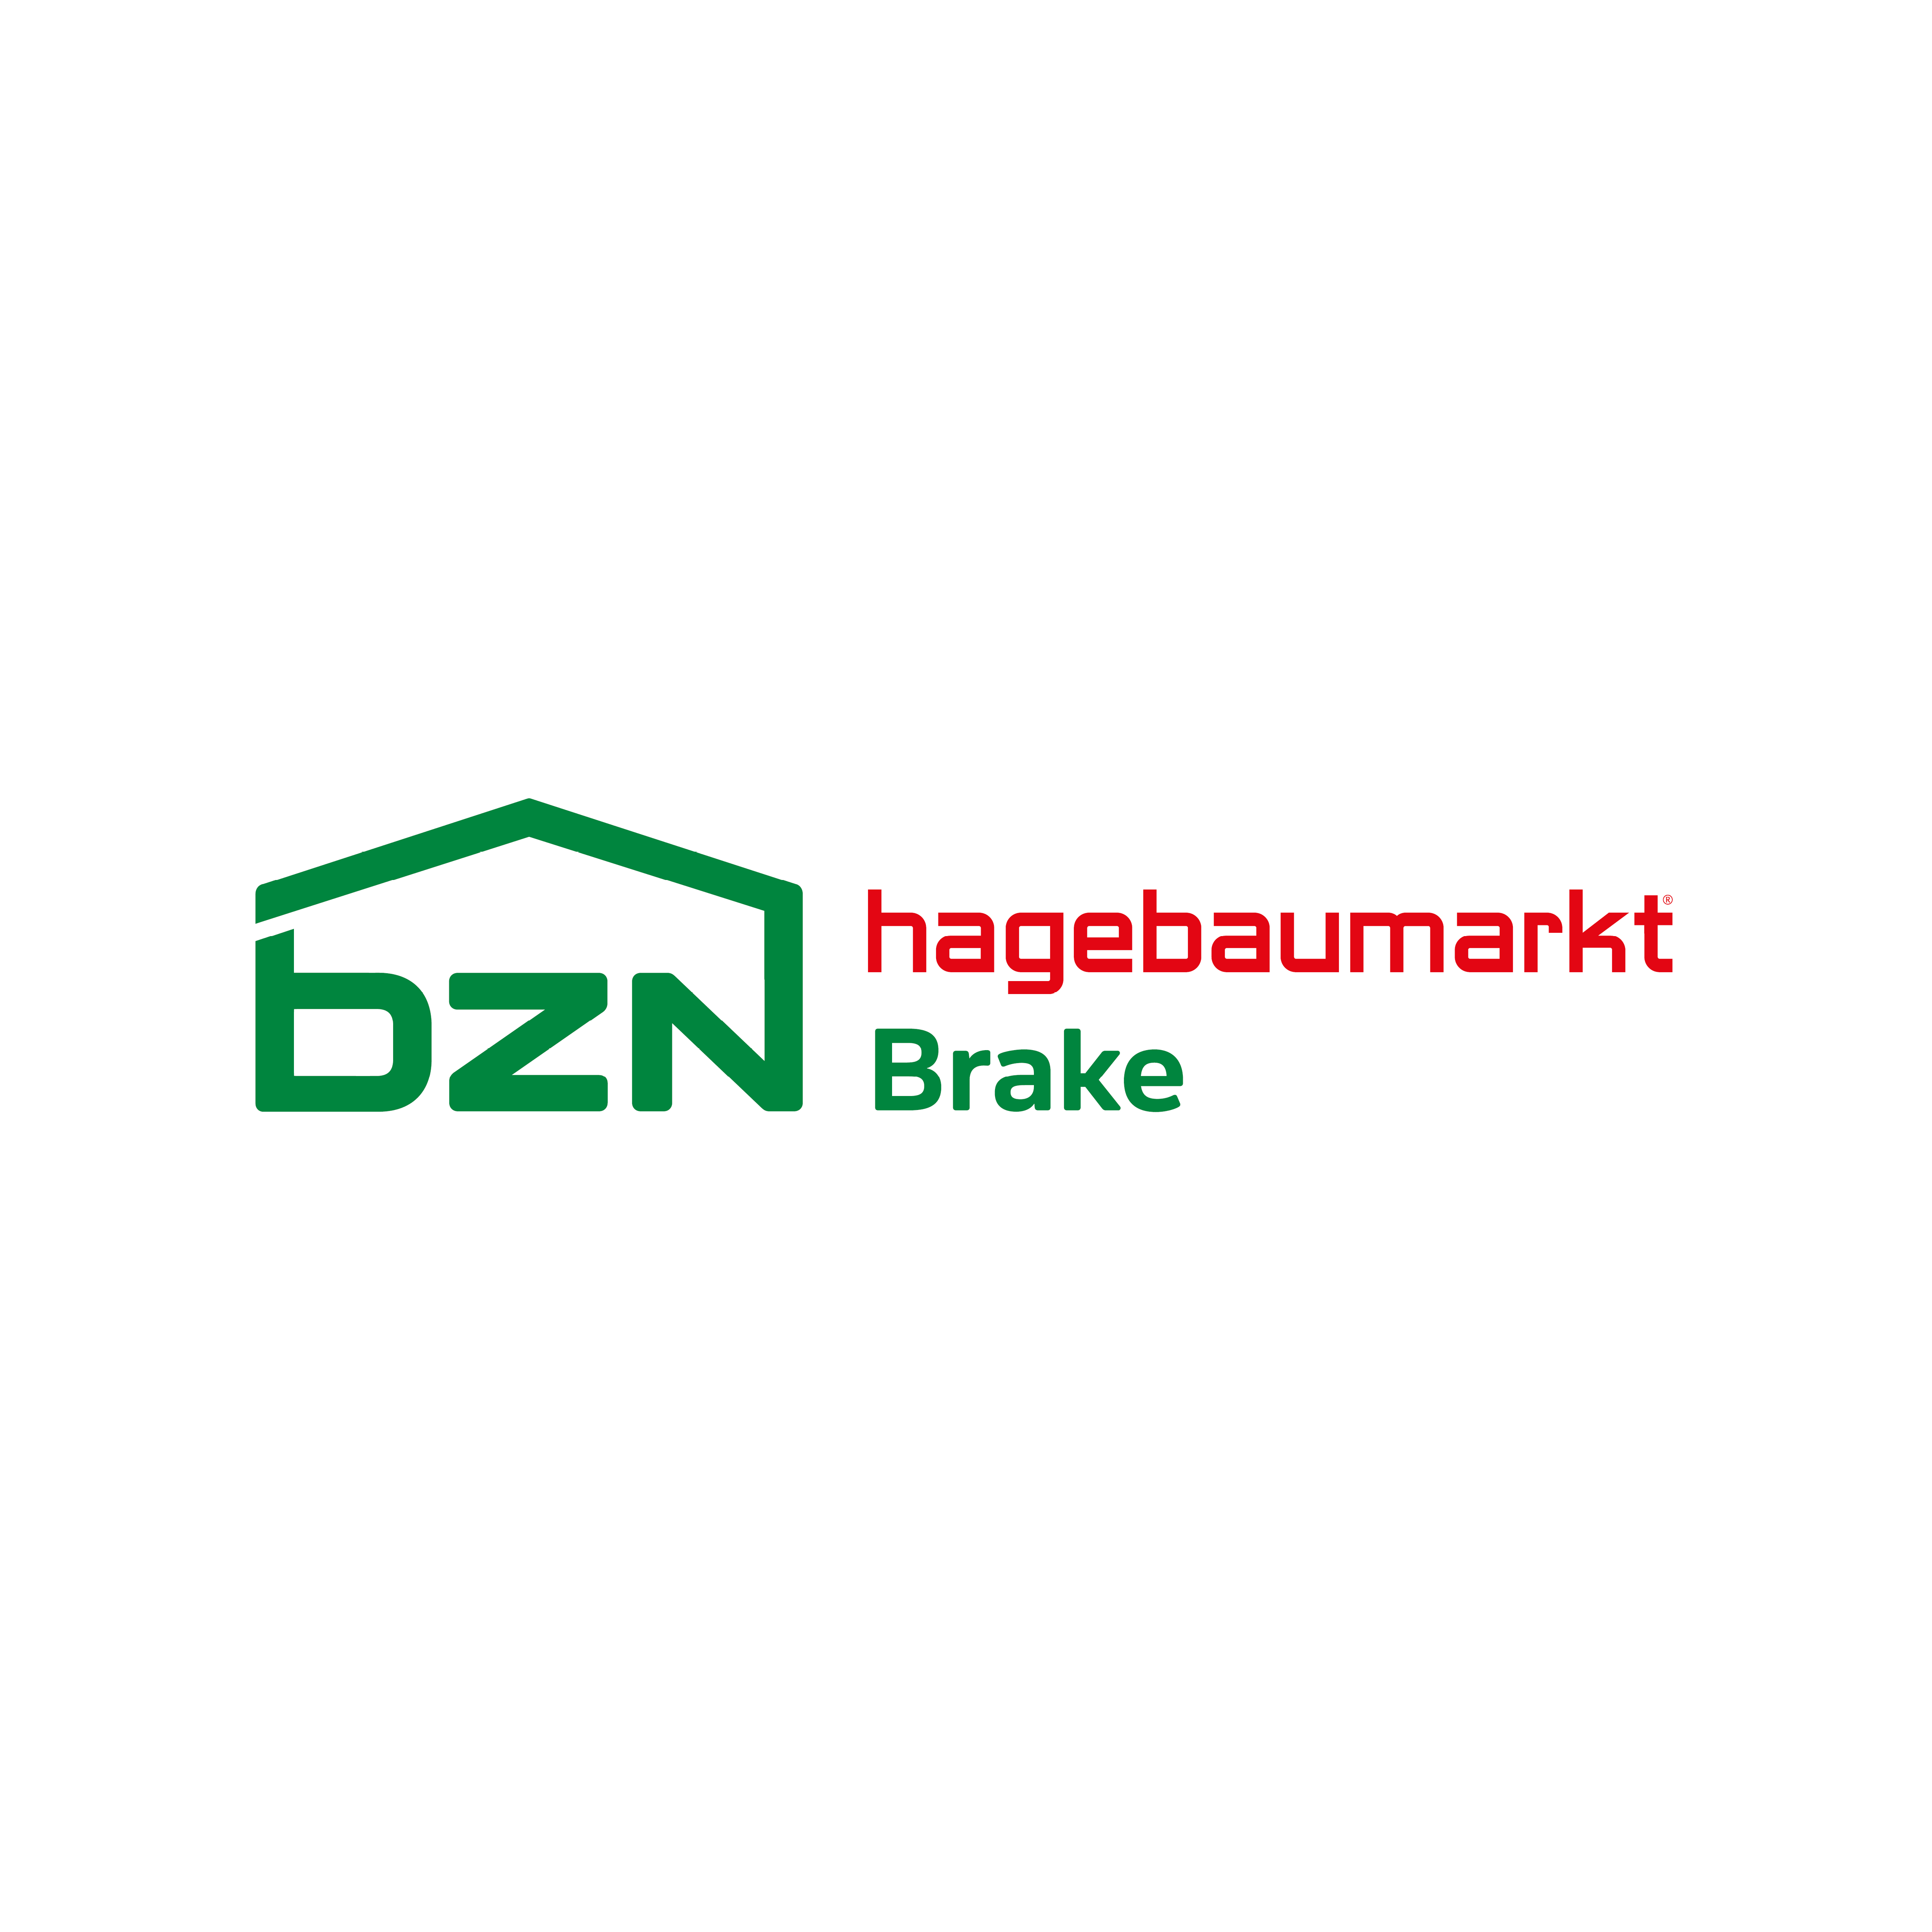 BZN Hagebau Brake GmbH & Co. KG in Brake an der Unterweser - Logo